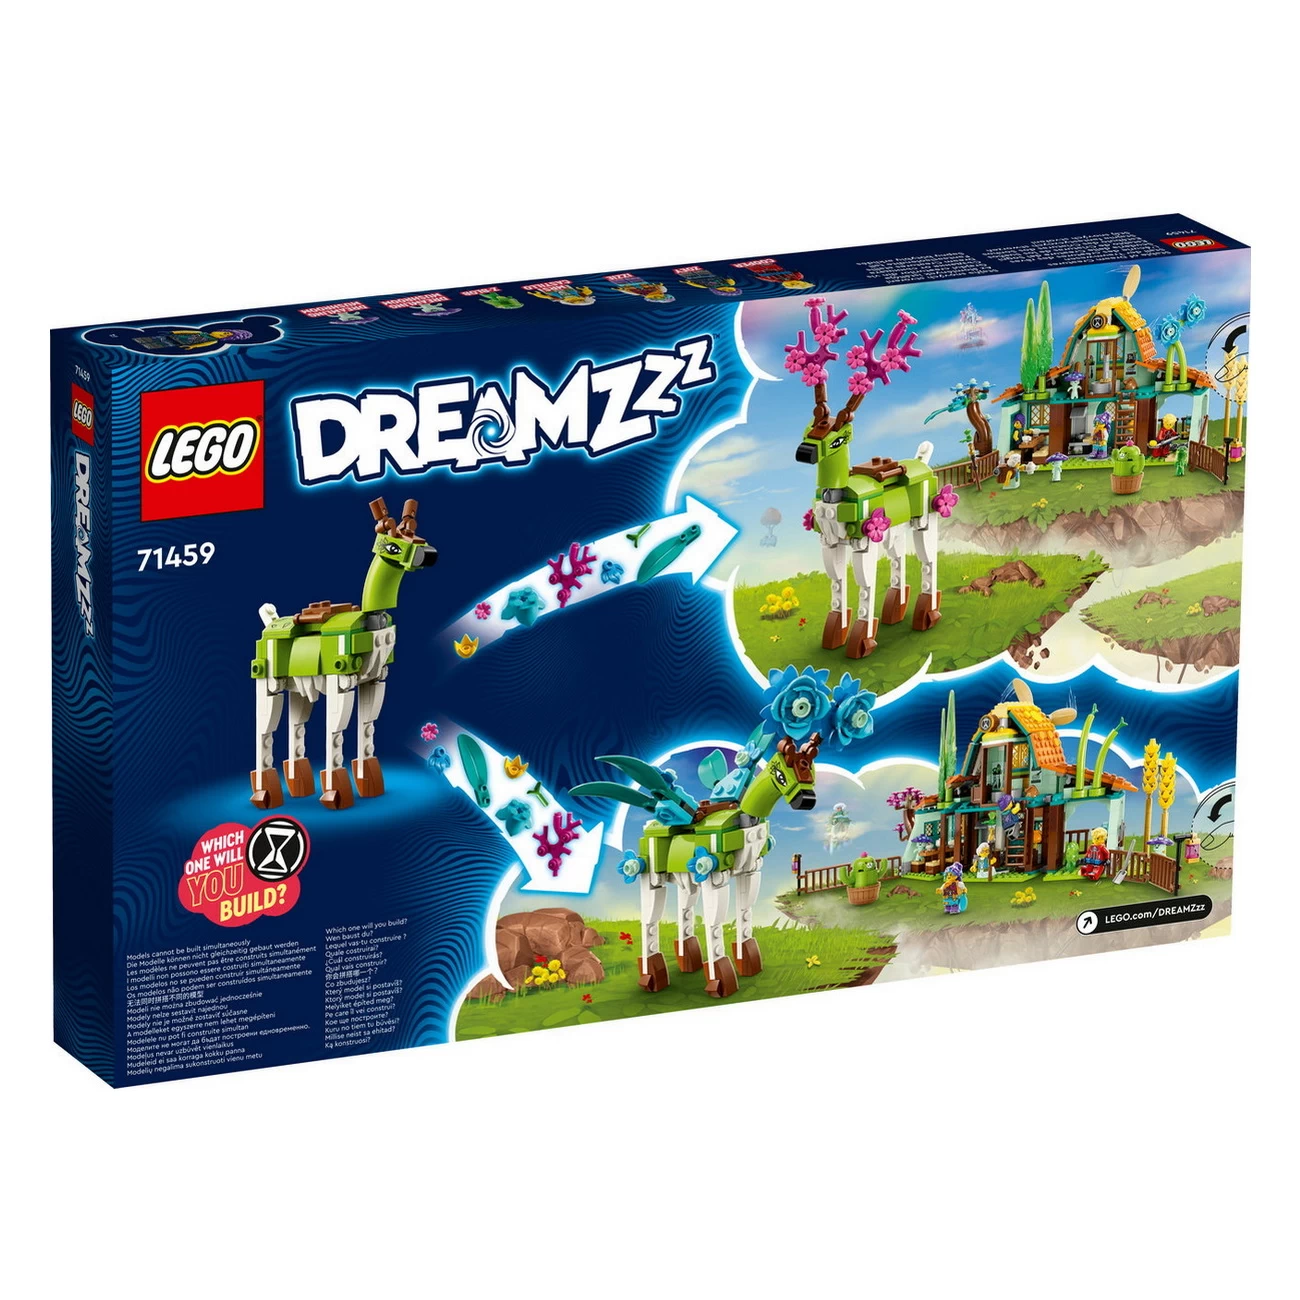 LEGO DREAMZzz - Stall der Traumwesen - 71459